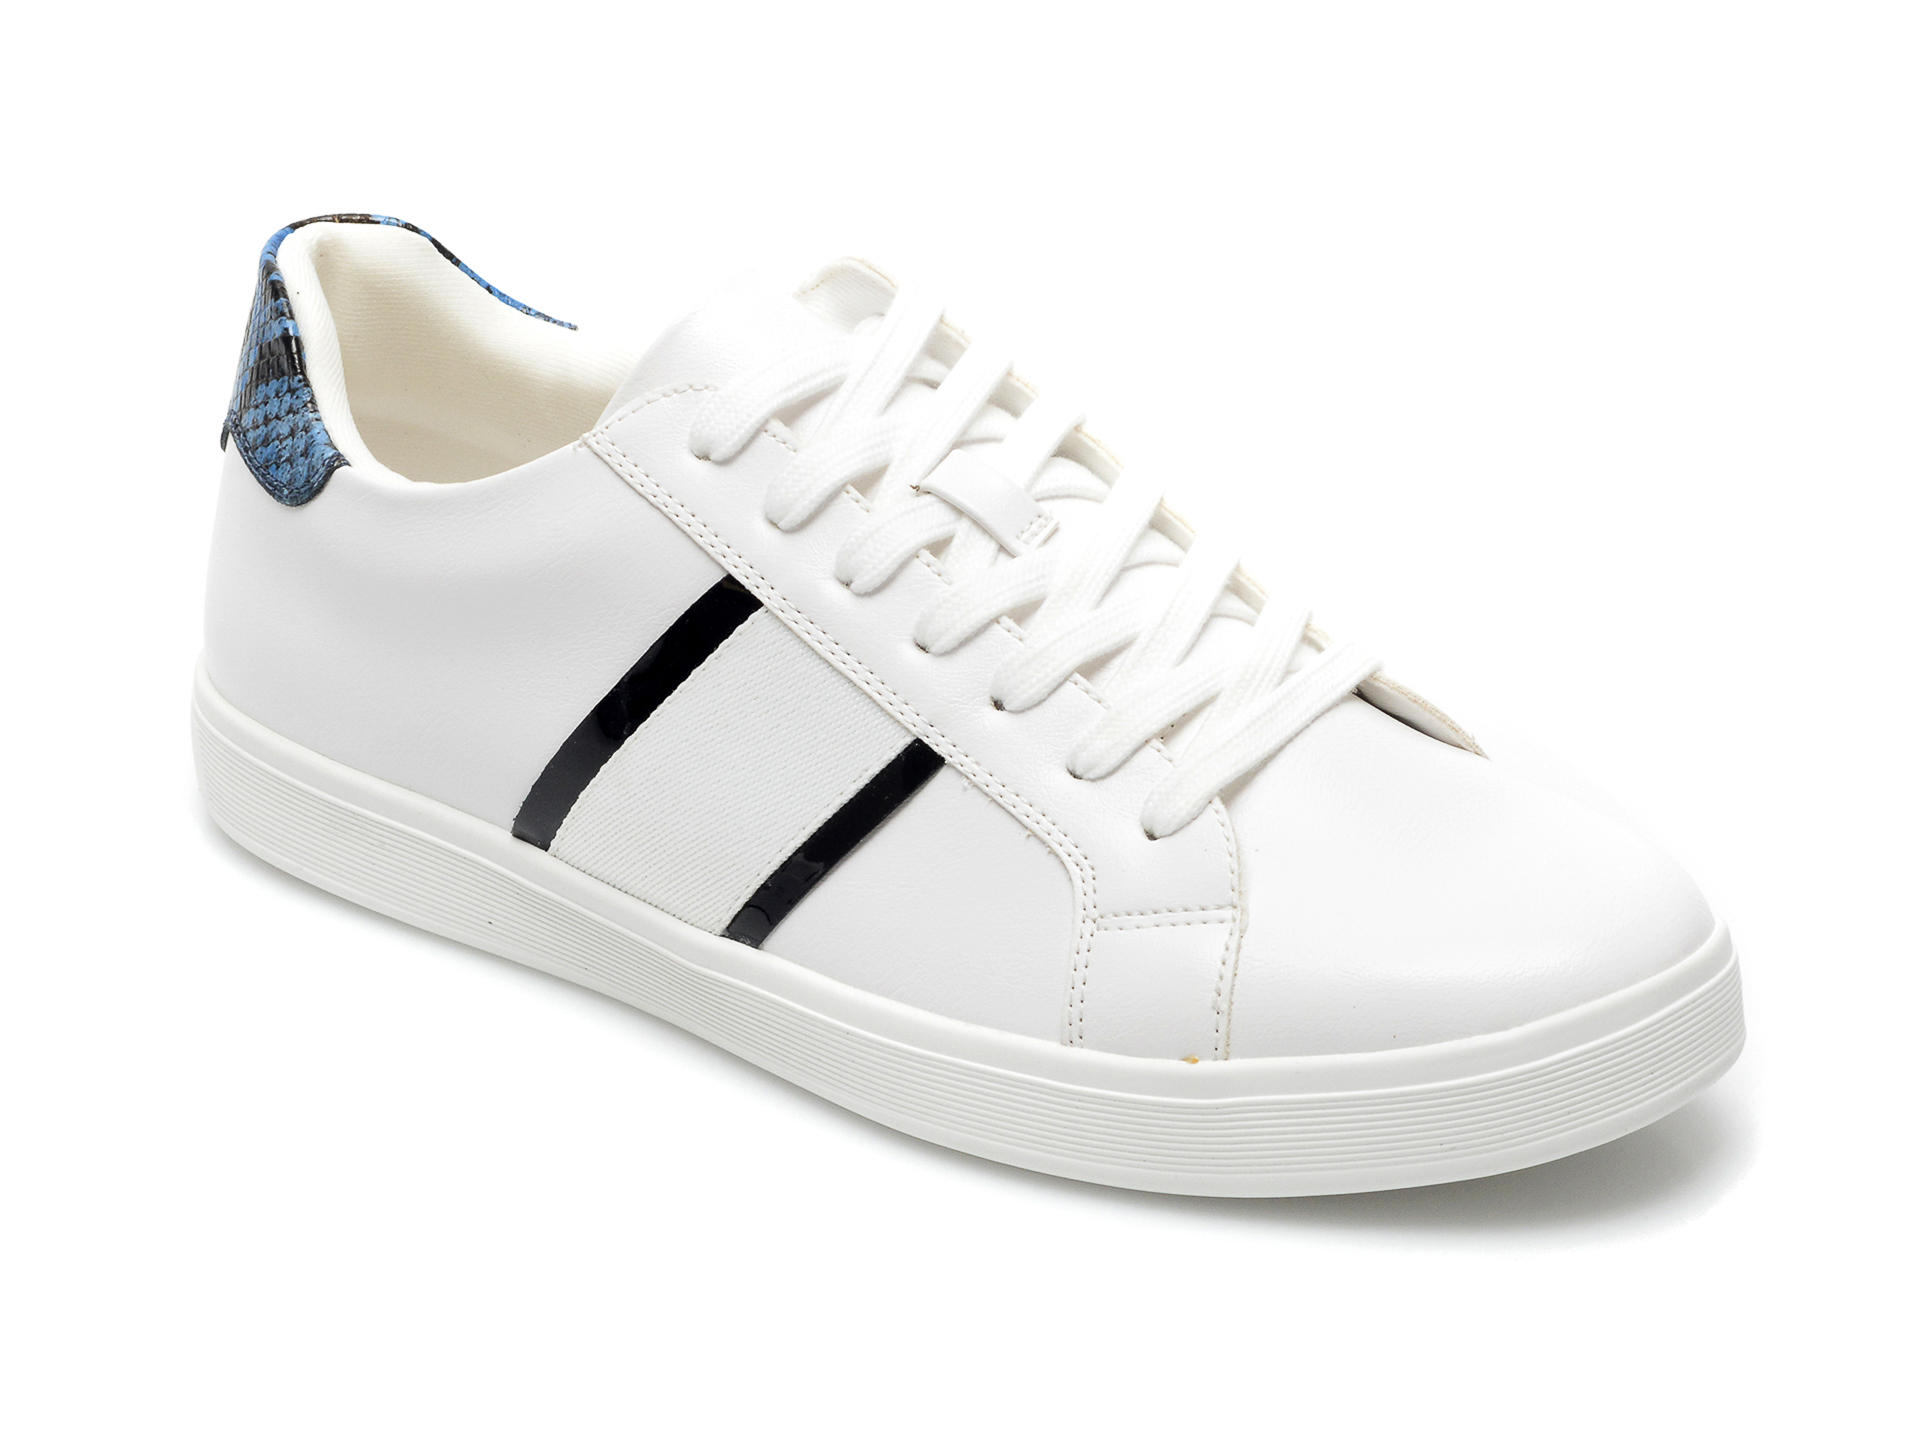 Pantofi sport ALDO albi, Cowien100, din piele ecologica Aldo Aldo